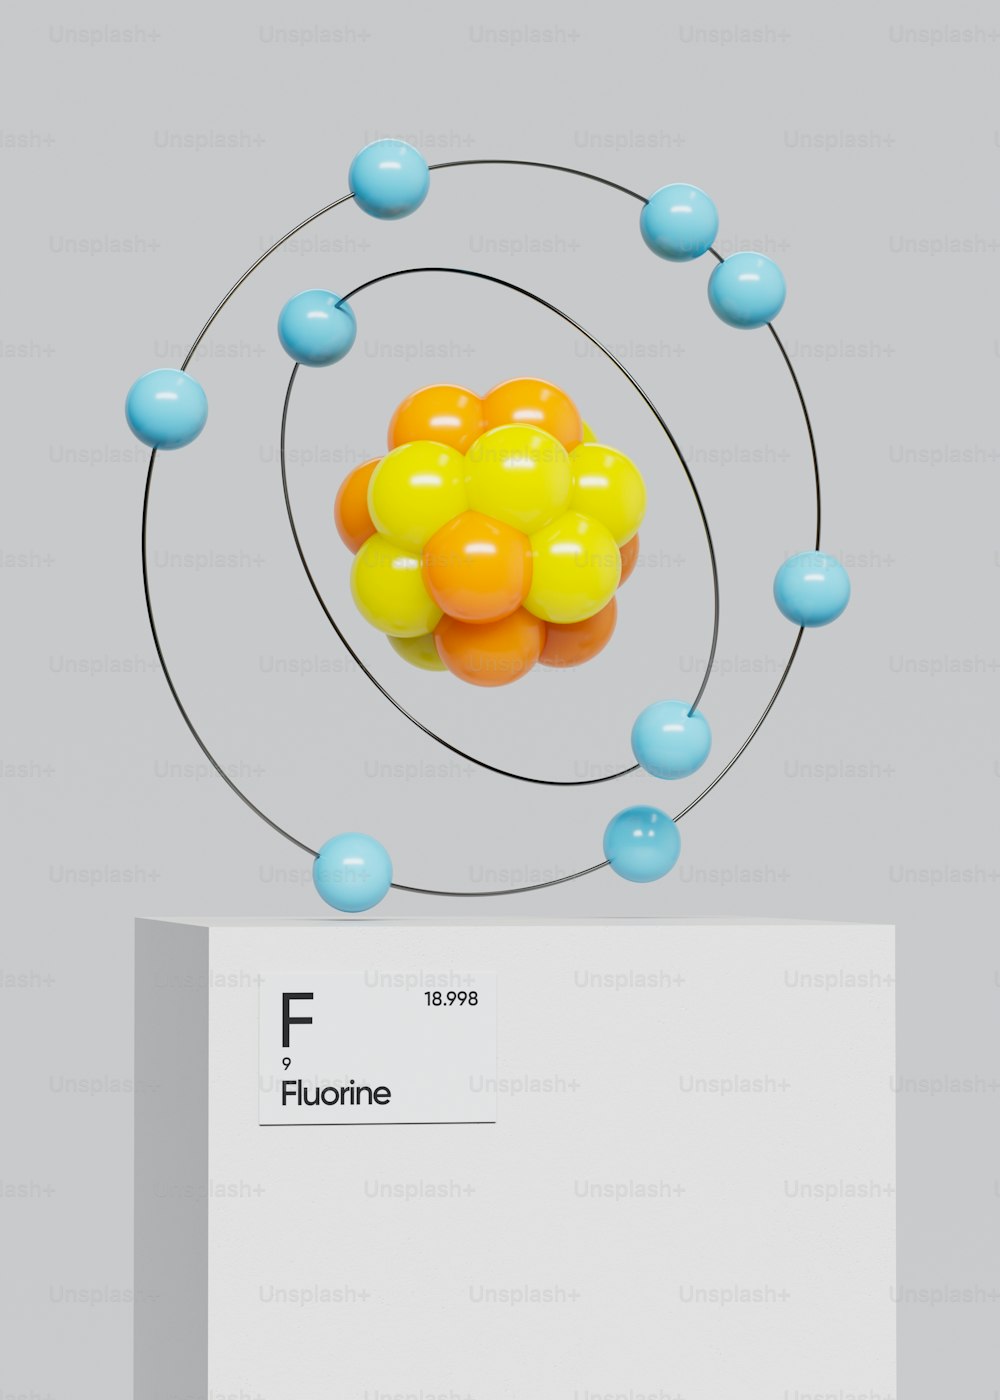 una imagen de un modelo de la estructura de una sustancia